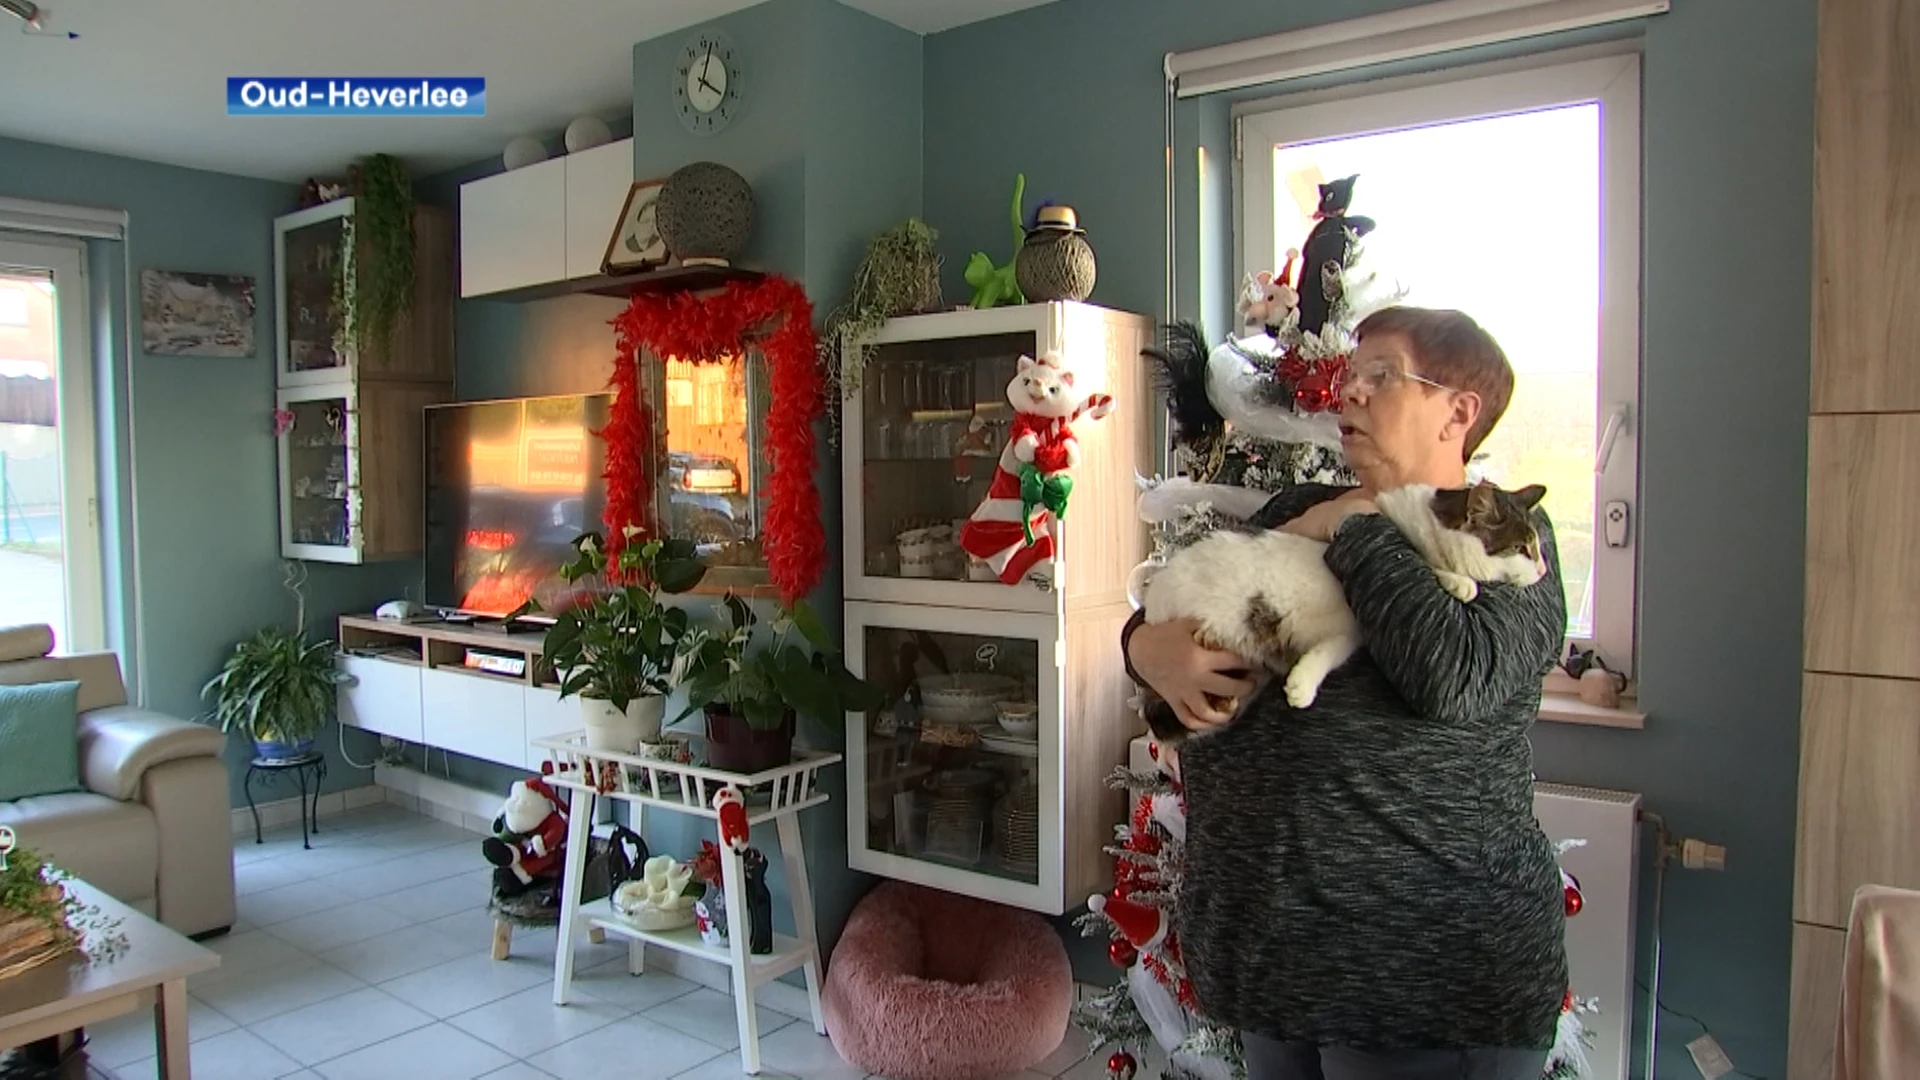 Ongelooflijk: vermiste kat uit Oud-Heverlee na 8 jaar weer teruggevonden... in een andere provincie